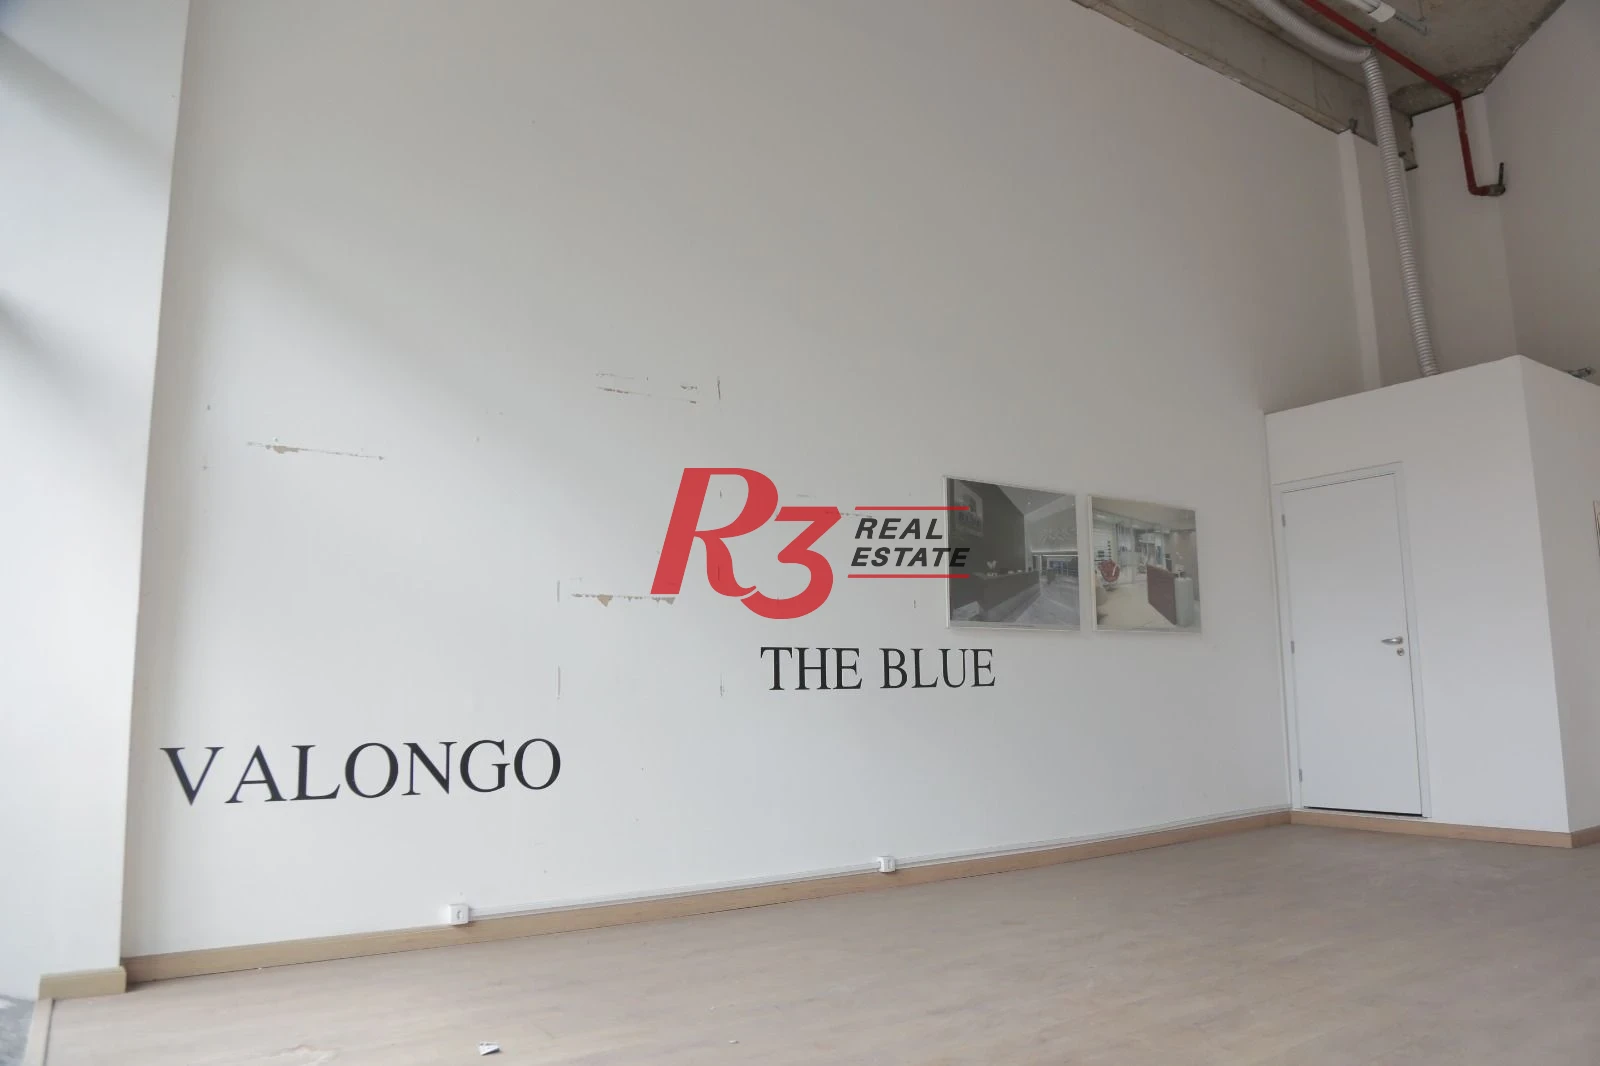 Sala à venda, 43 m² por R$ 235.000,00 - Valongo - Santos/SP